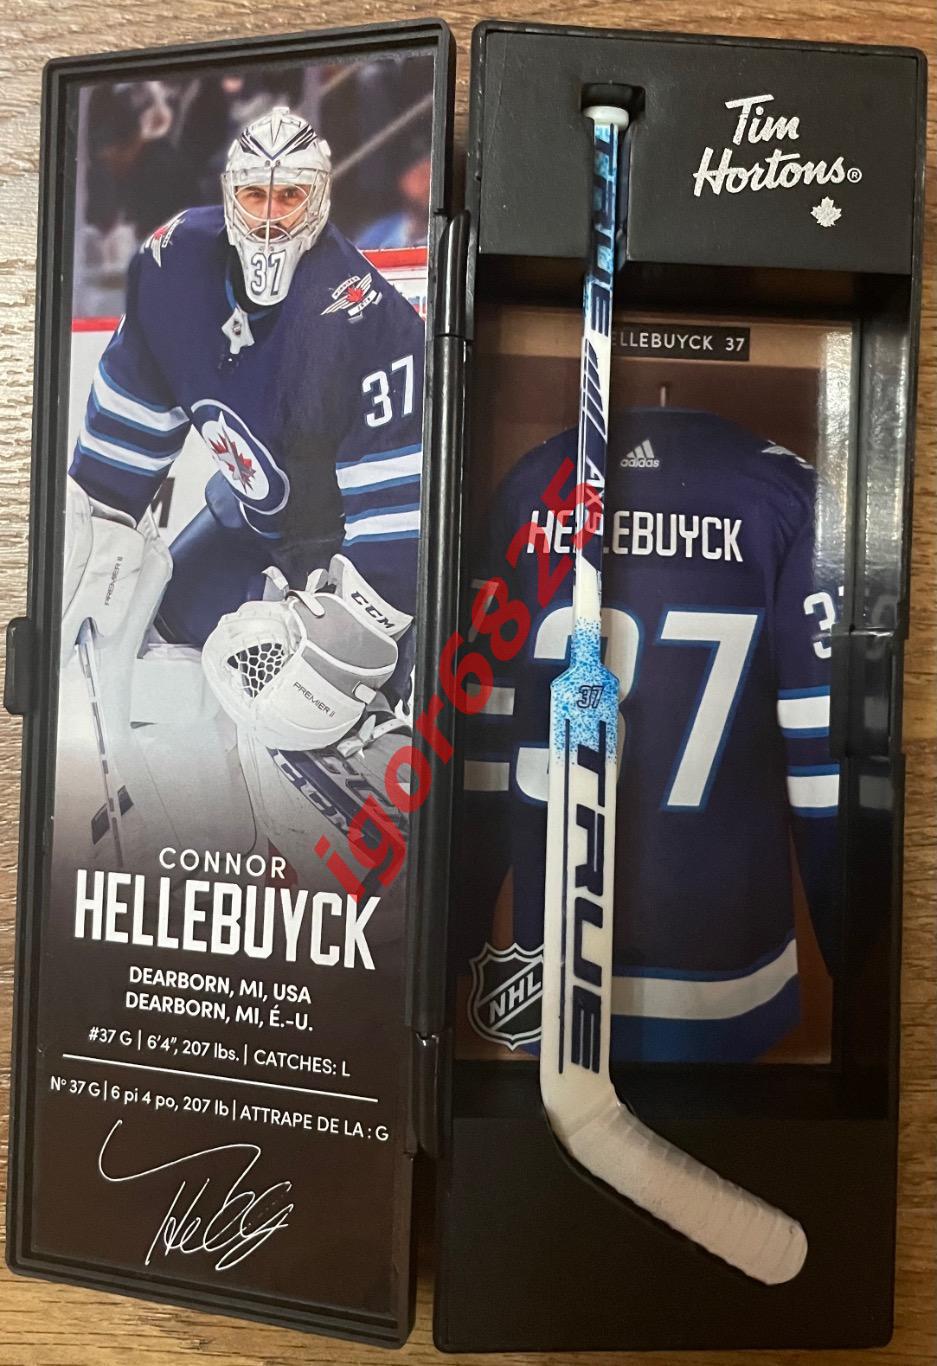 Хоккей Хеллебайк CONNOR HELLEBUYCK №37 набор с клюшкой Tim Hortons 2020-21, NHL